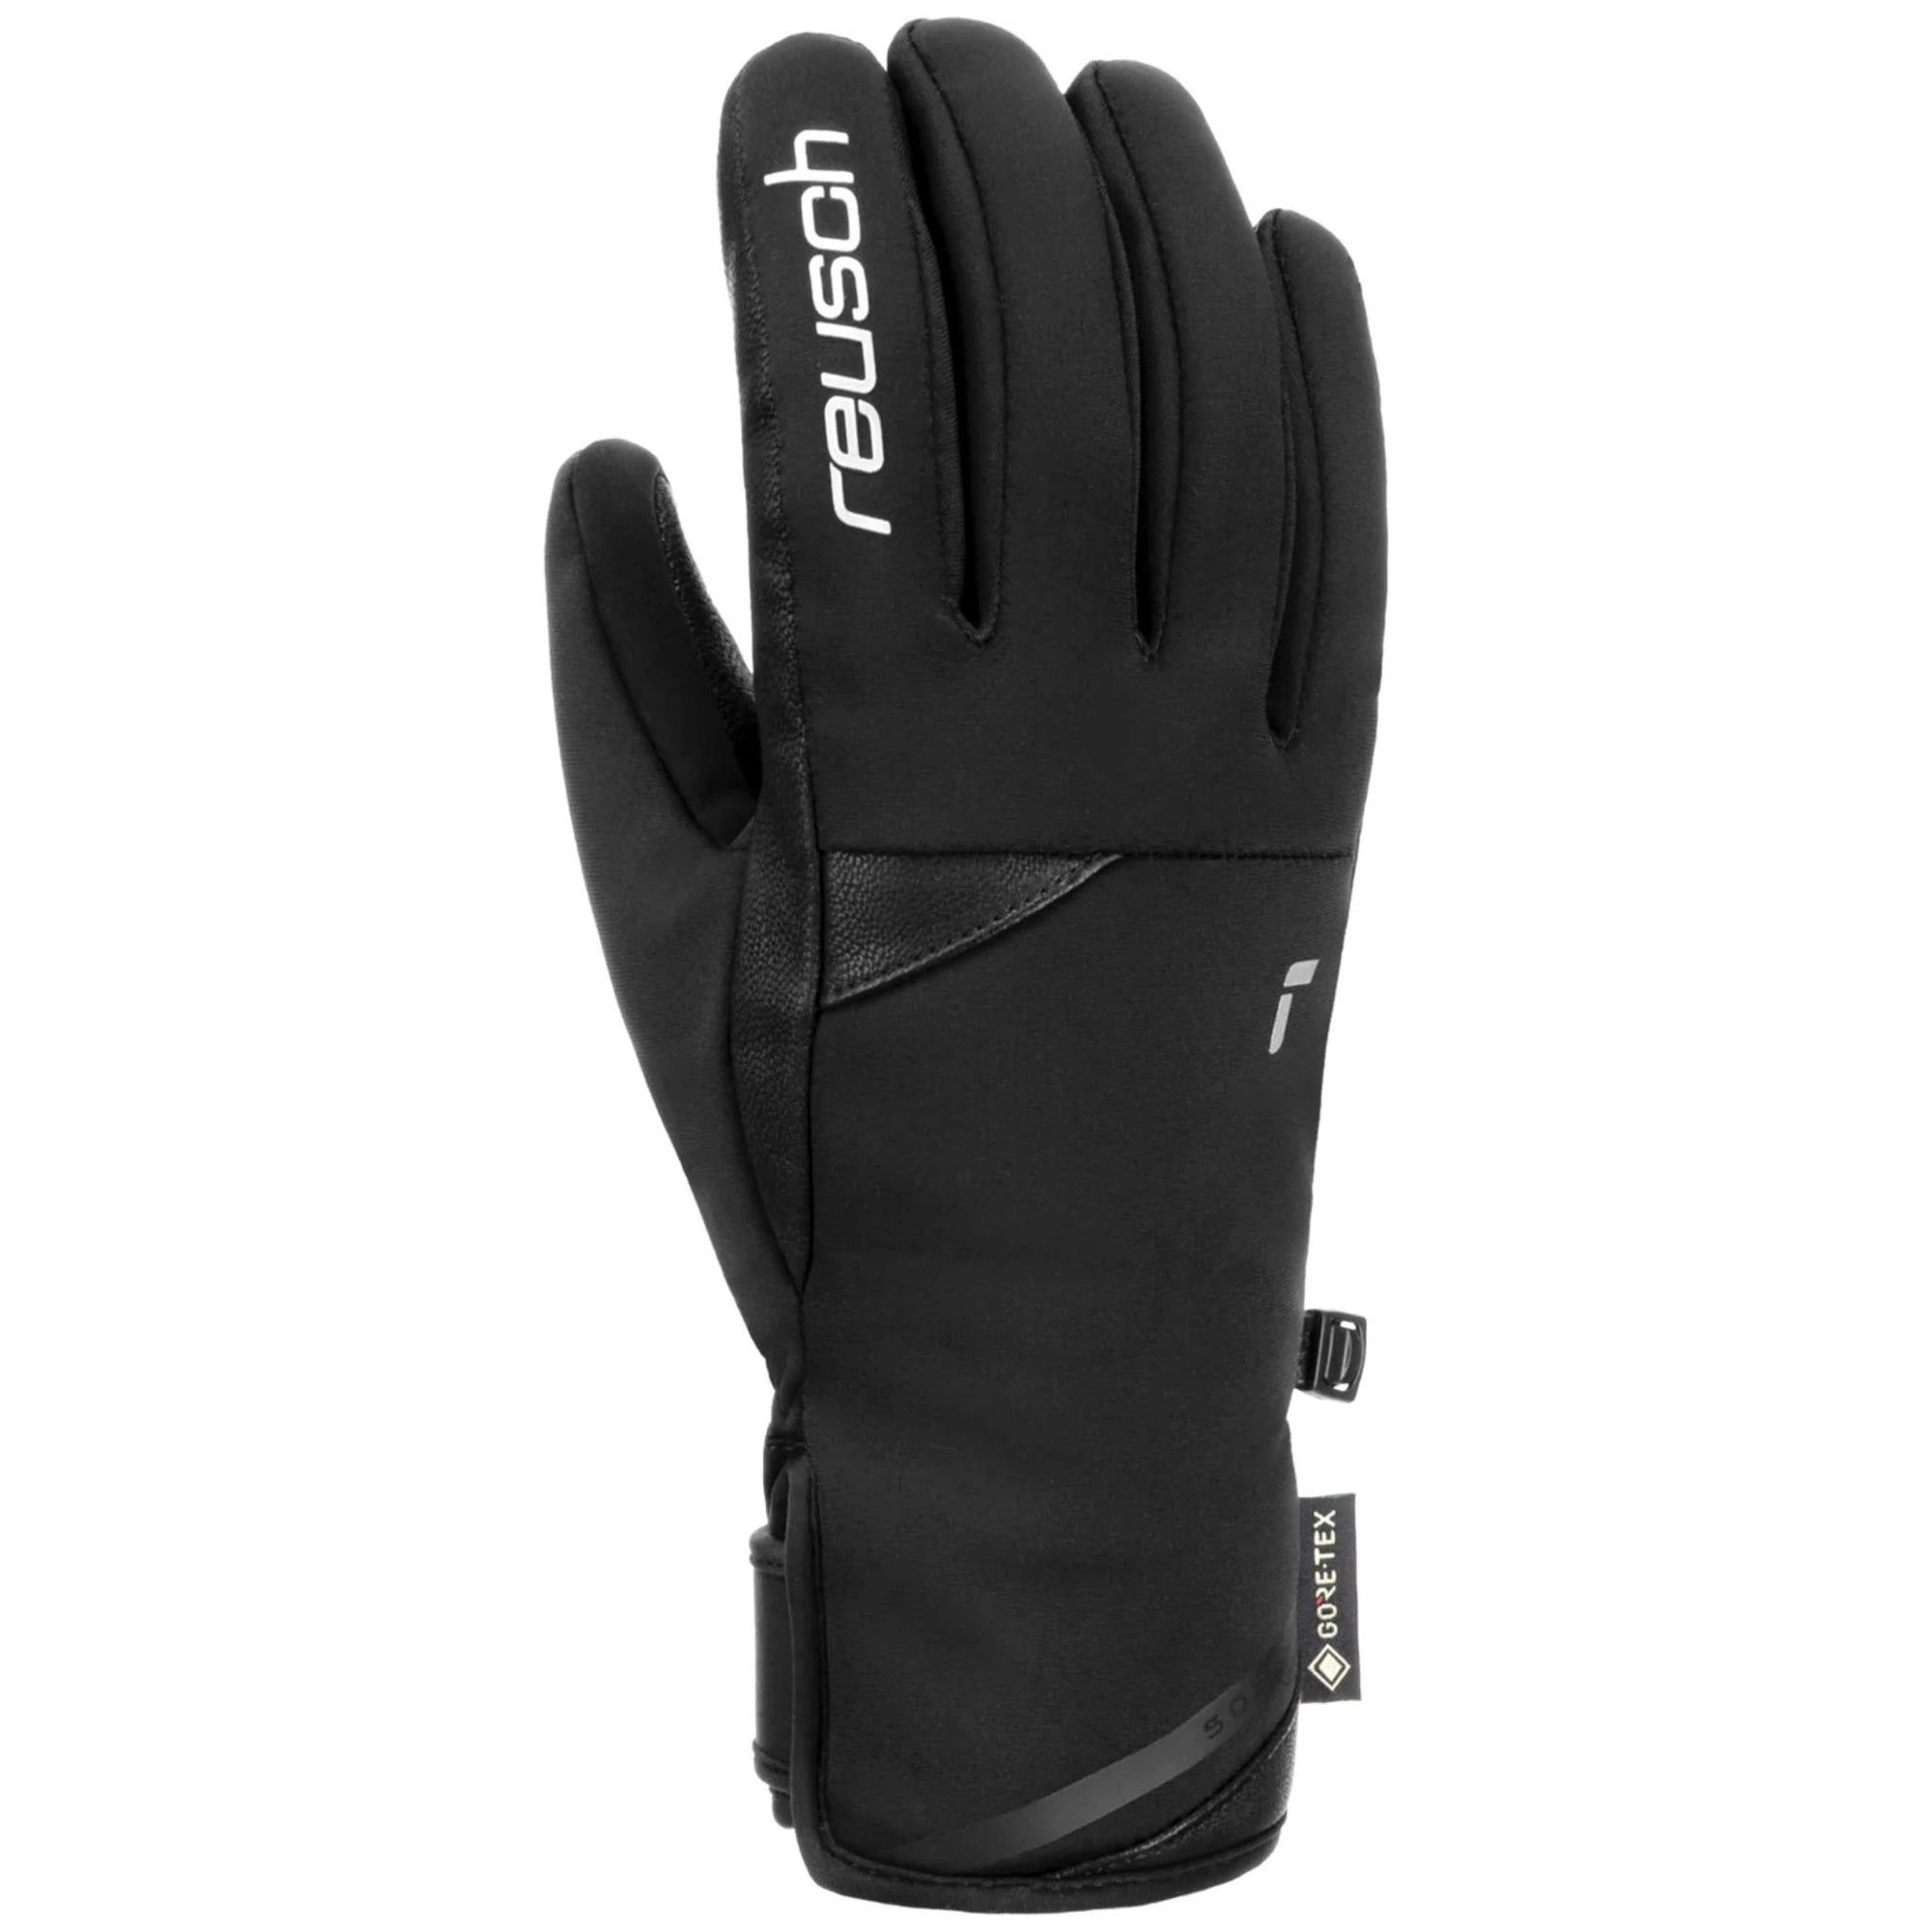 Womens Reusch Paula GORE-TEX Glove - Black Gloves Reusch XS / 6.5 